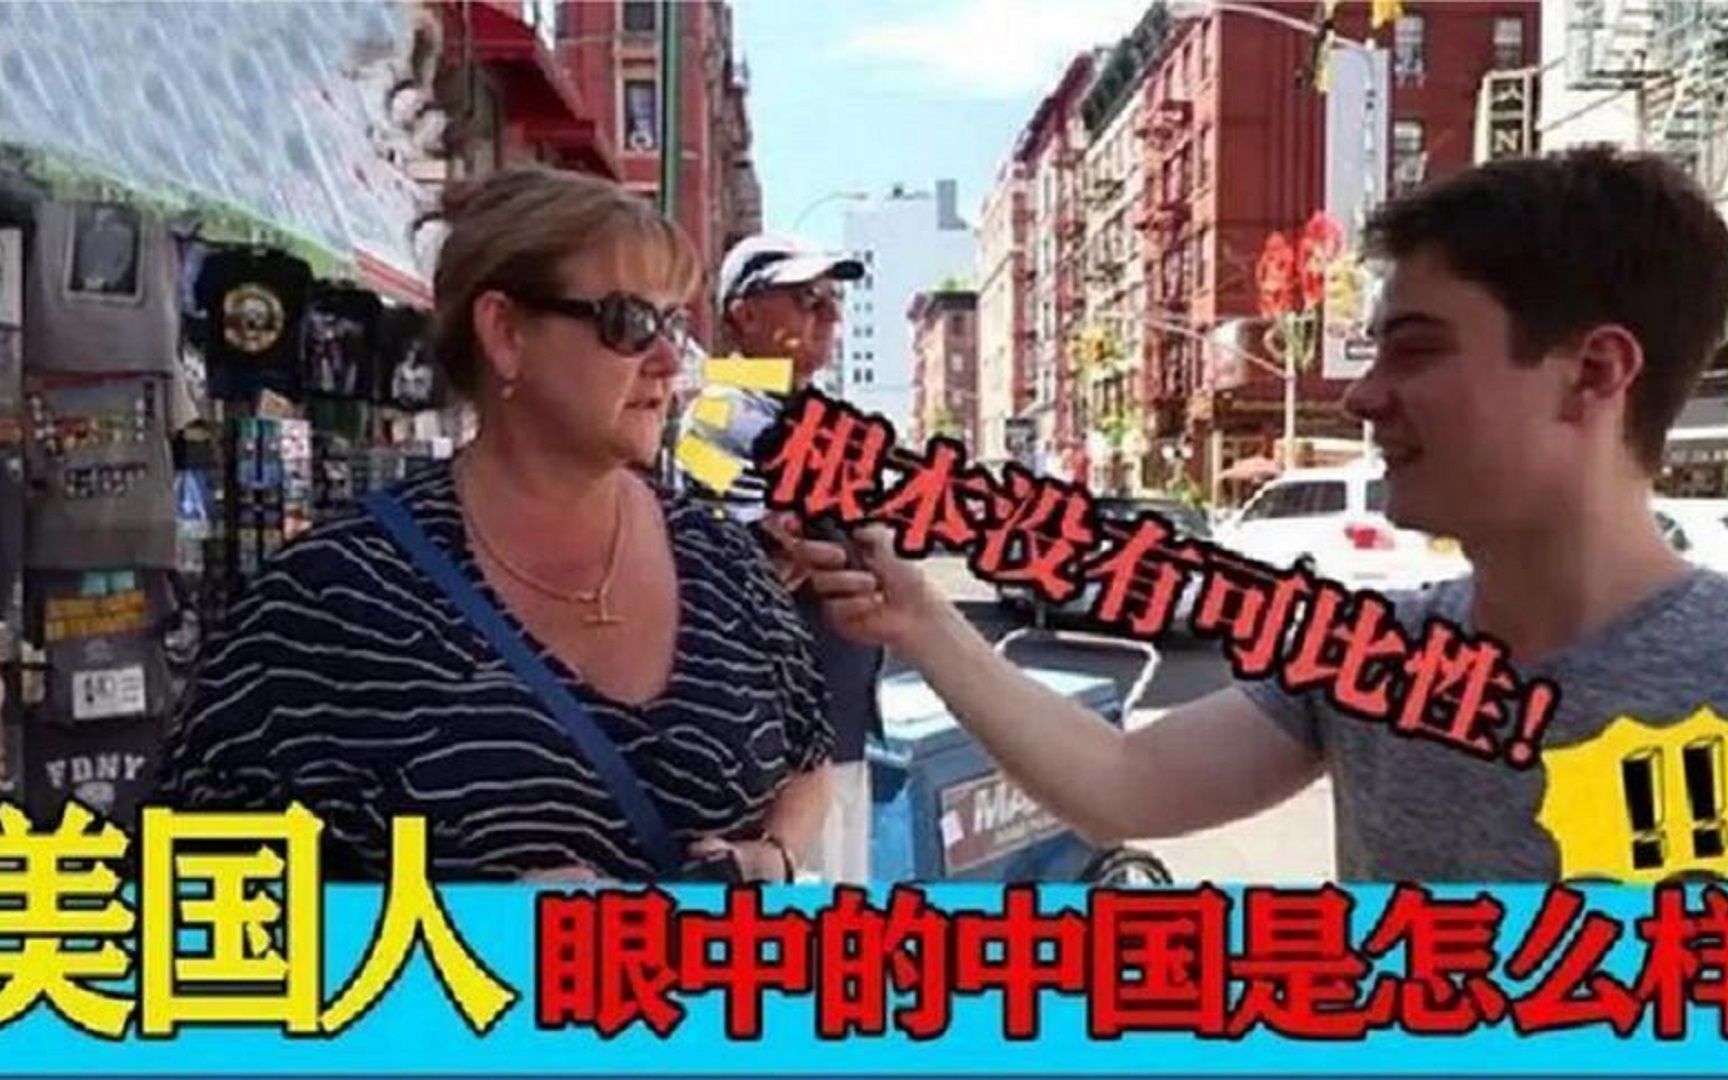 意想不到的街头采访，美国人眼中的中国，连做梦都没想到